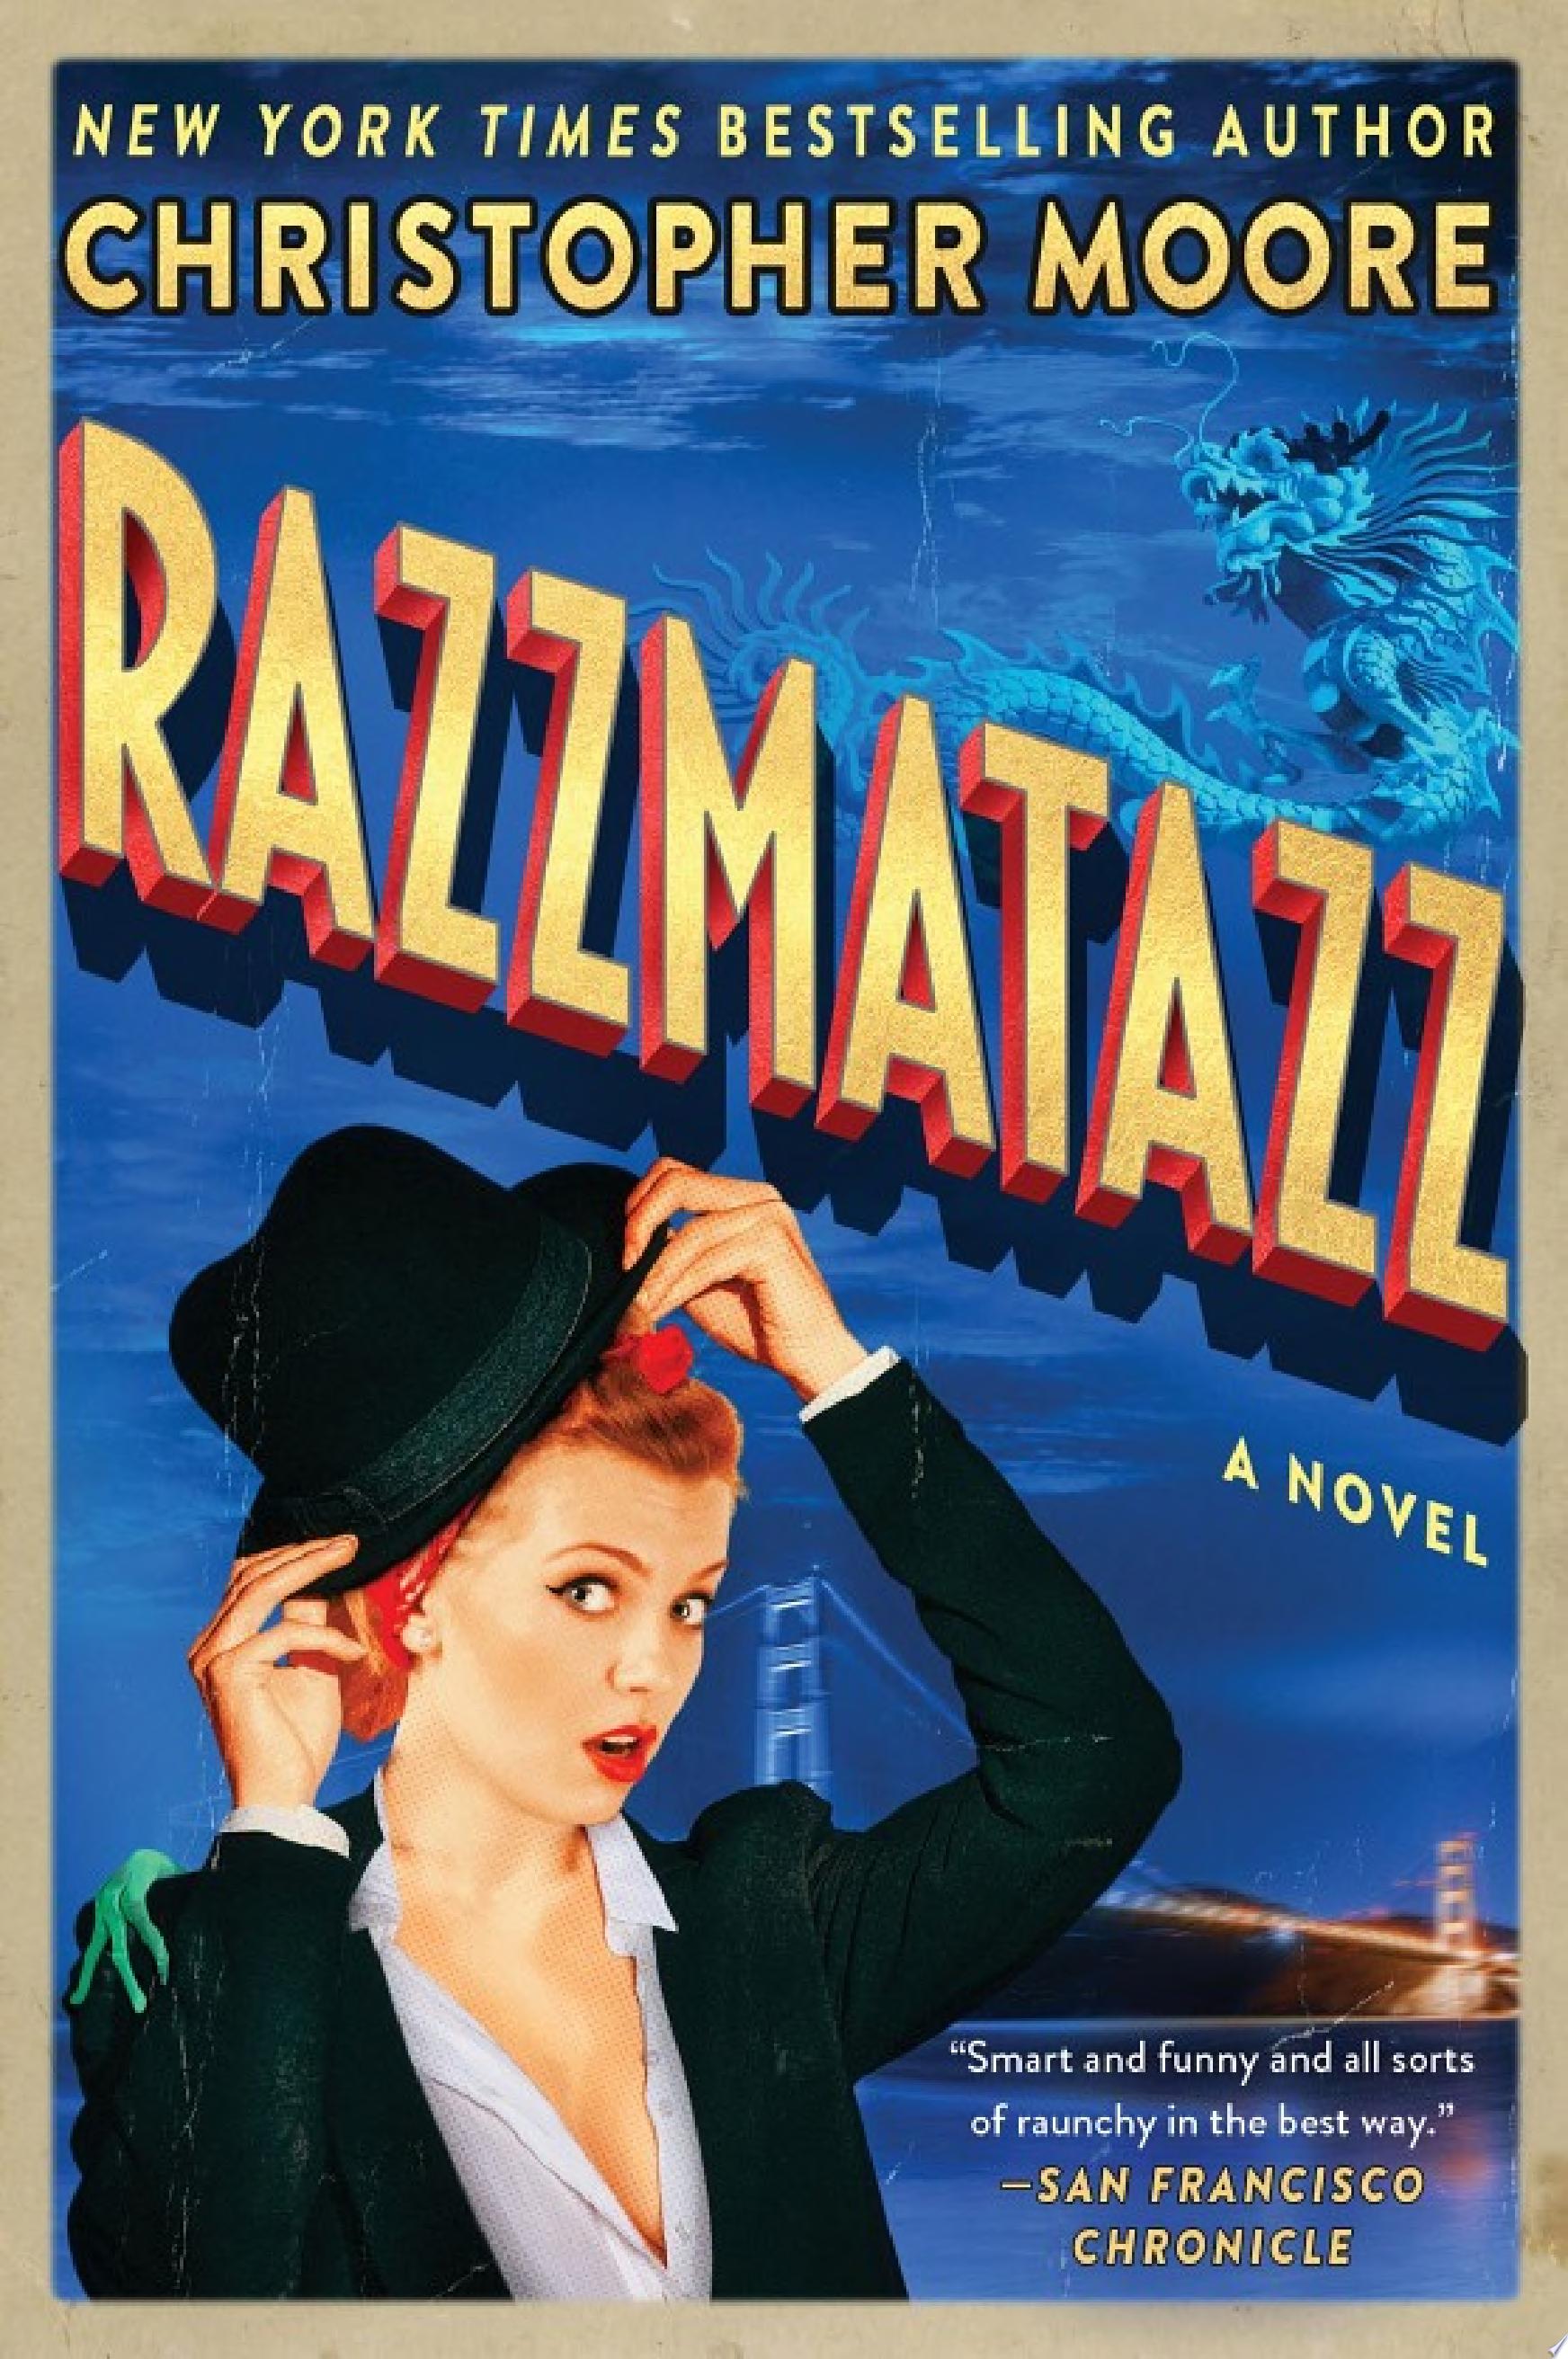 Image for "Razzmatazz"